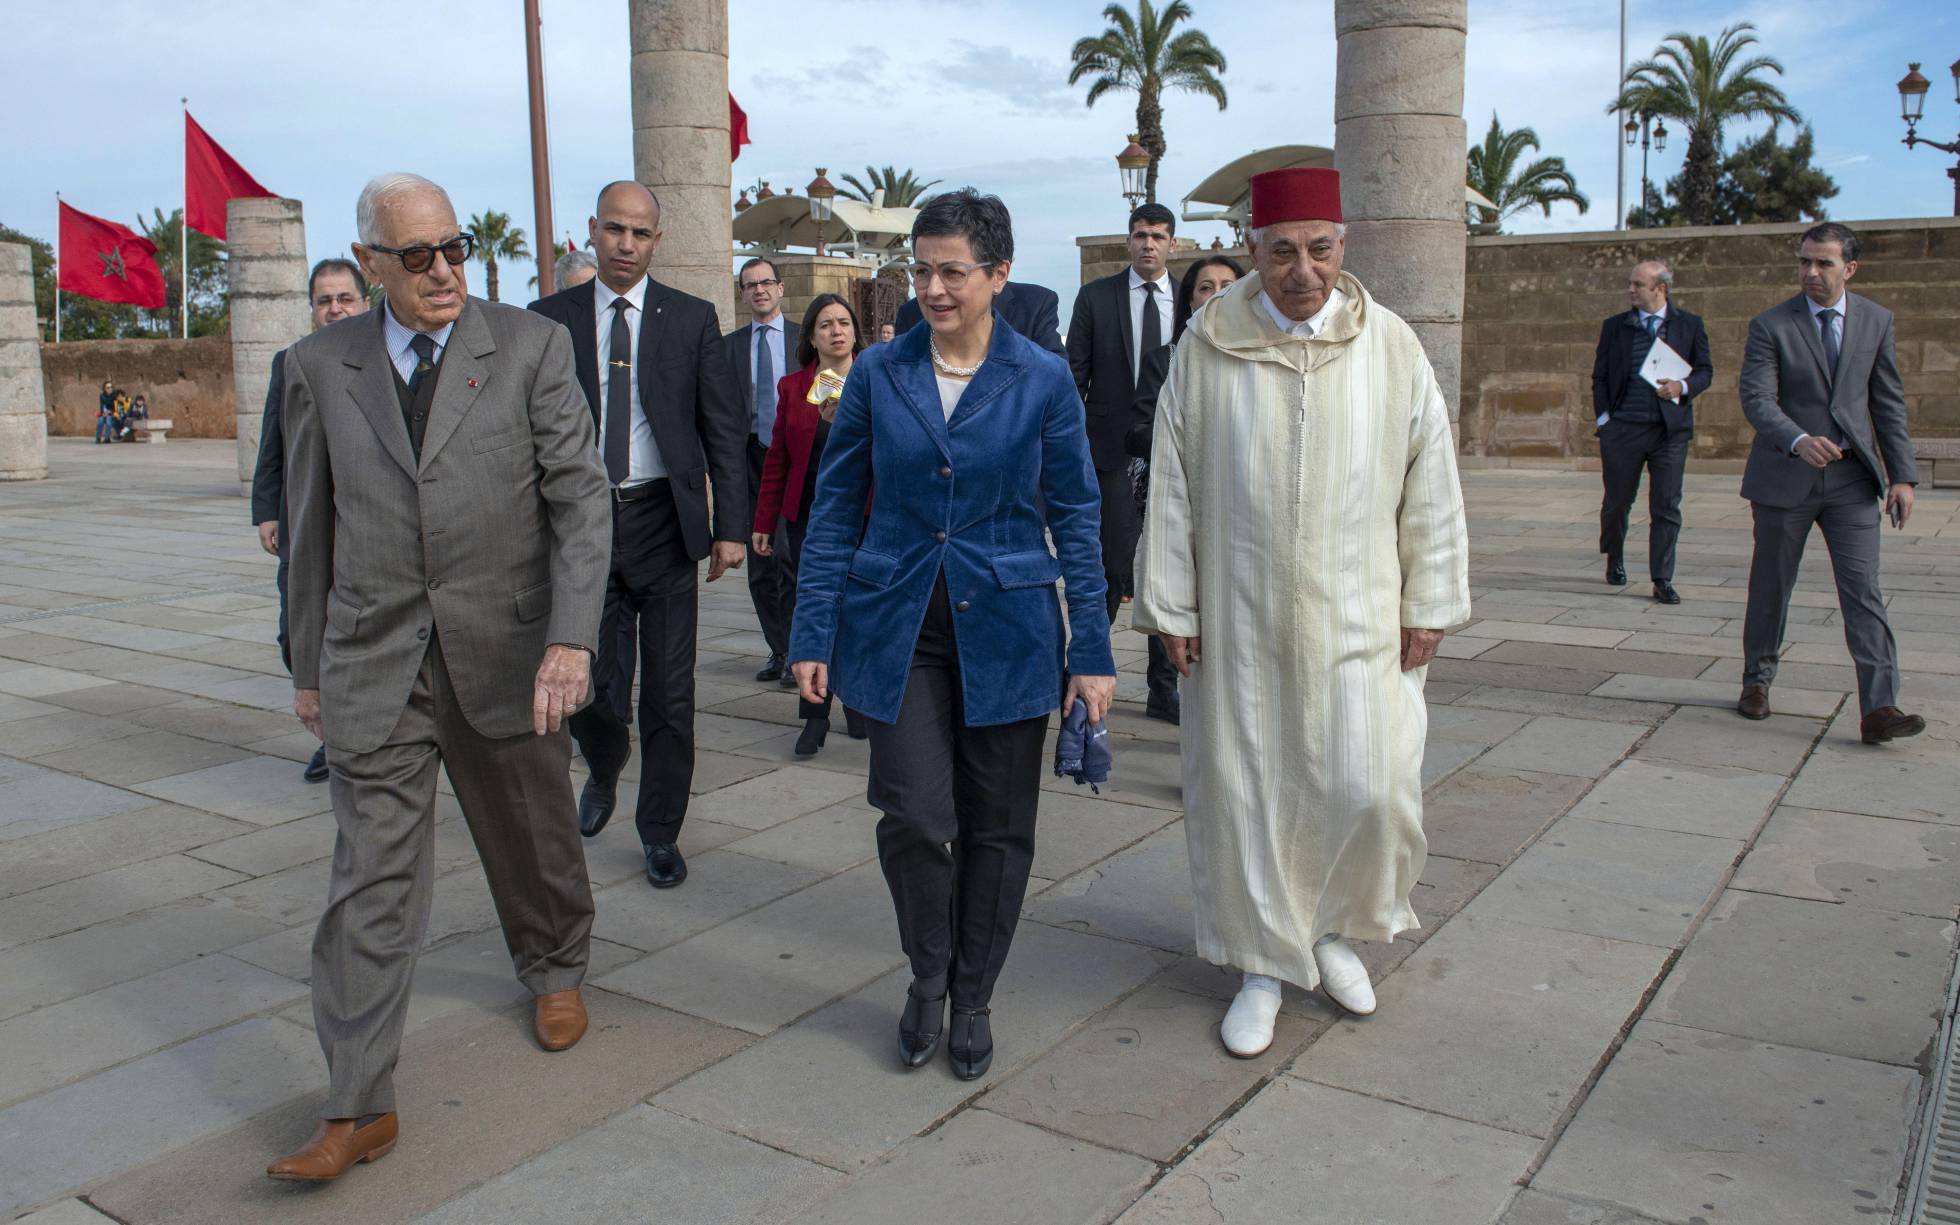 Report de la visite de González Laya à Alger: Madrid trop soumise aux pressions de Rabat?